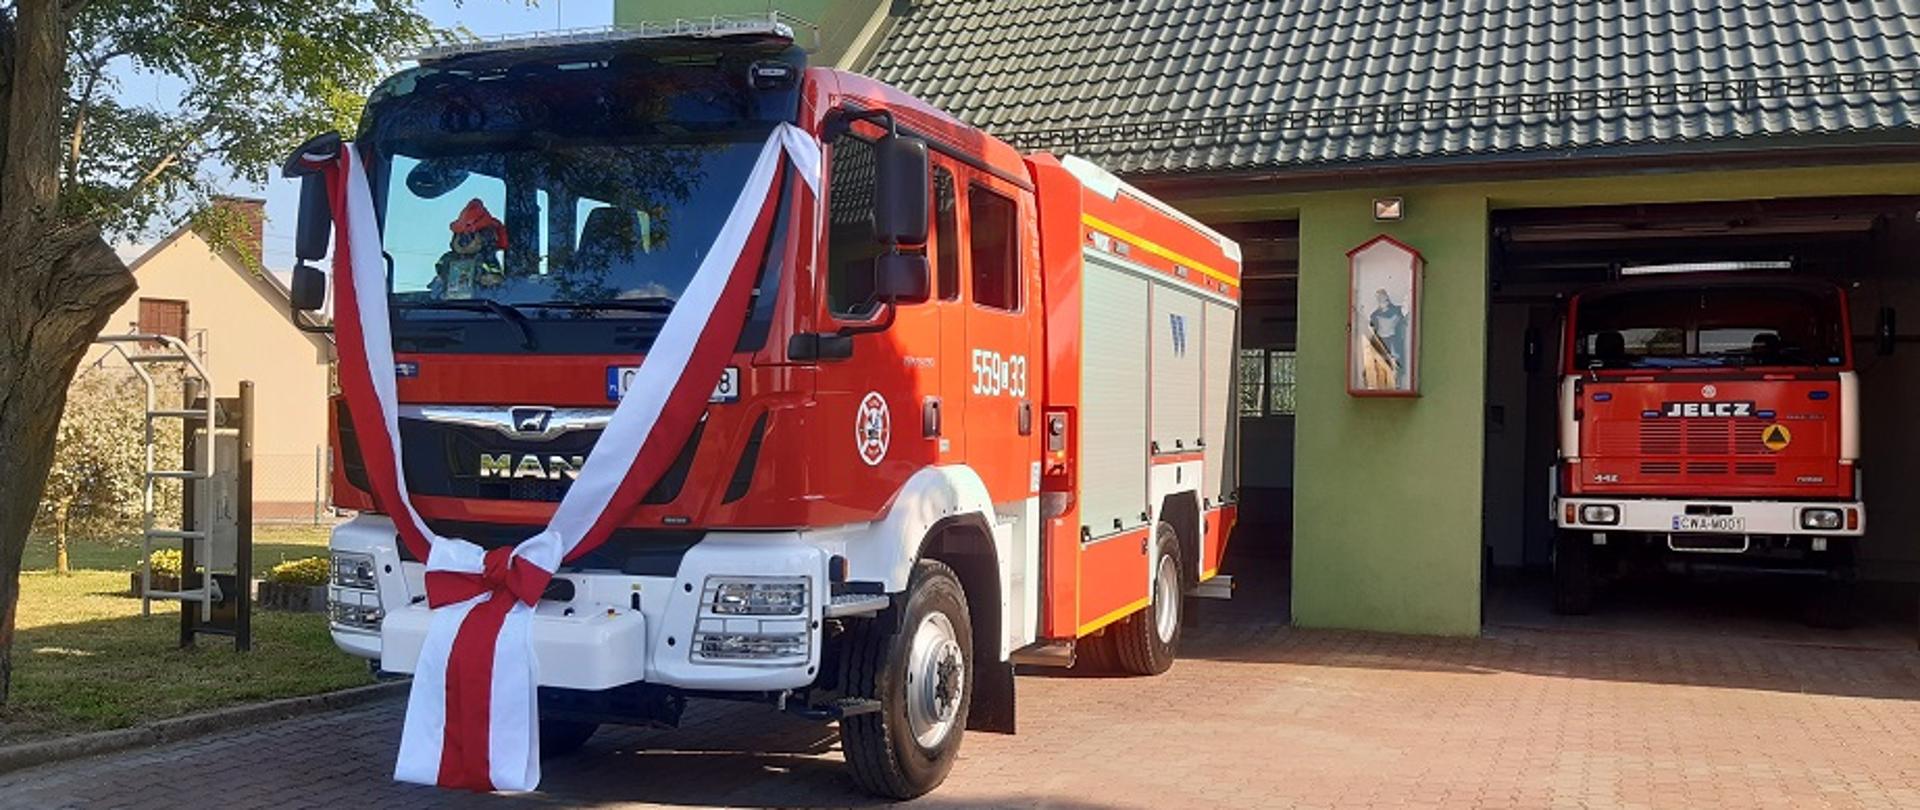 W sobotę 19 czerwca 2021 roku w jednostce Ochotniczej Straży Pożarnej w Zieleniu odbyła się uroczystość poświęcenia średniego samochodu ratowniczo-gaśniczego marki Man.